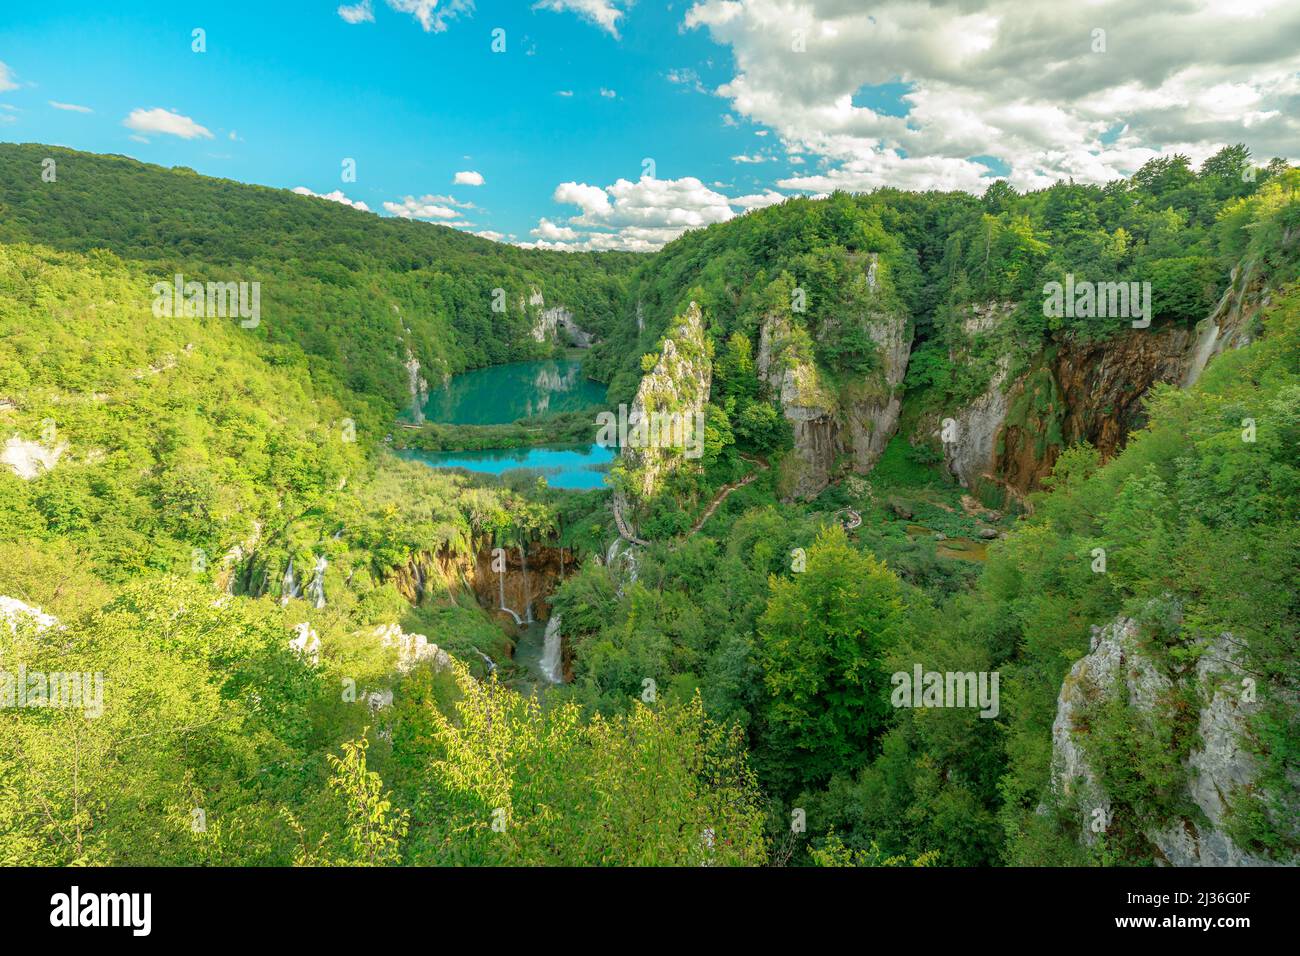 Point de vue du lac Korana le parc national des lacs de Plitvice en Croatie dans la région de Lika sur le lac Novakovica Brod. Nom du patrimoine mondial de l'UNESCO de la Croatie Banque D'Images